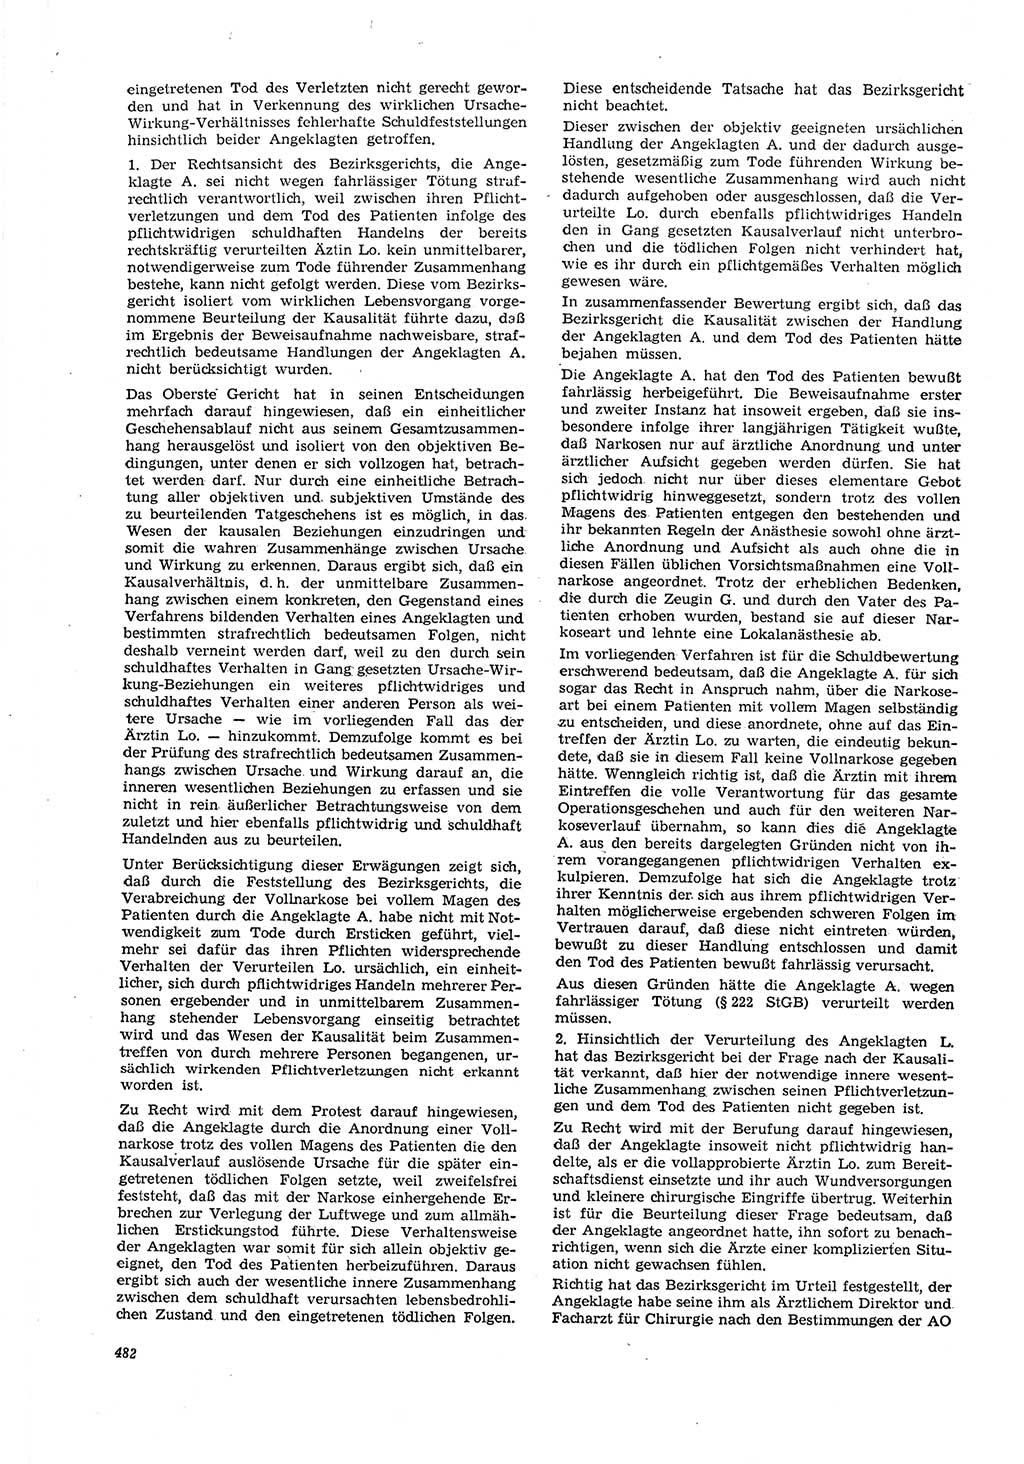 Neue Justiz (NJ), Zeitschrift für Recht und Rechtswissenschaft [Deutsche Demokratische Republik (DDR)], 21. Jahrgang 1967, Seite 482 (NJ DDR 1967, S. 482)